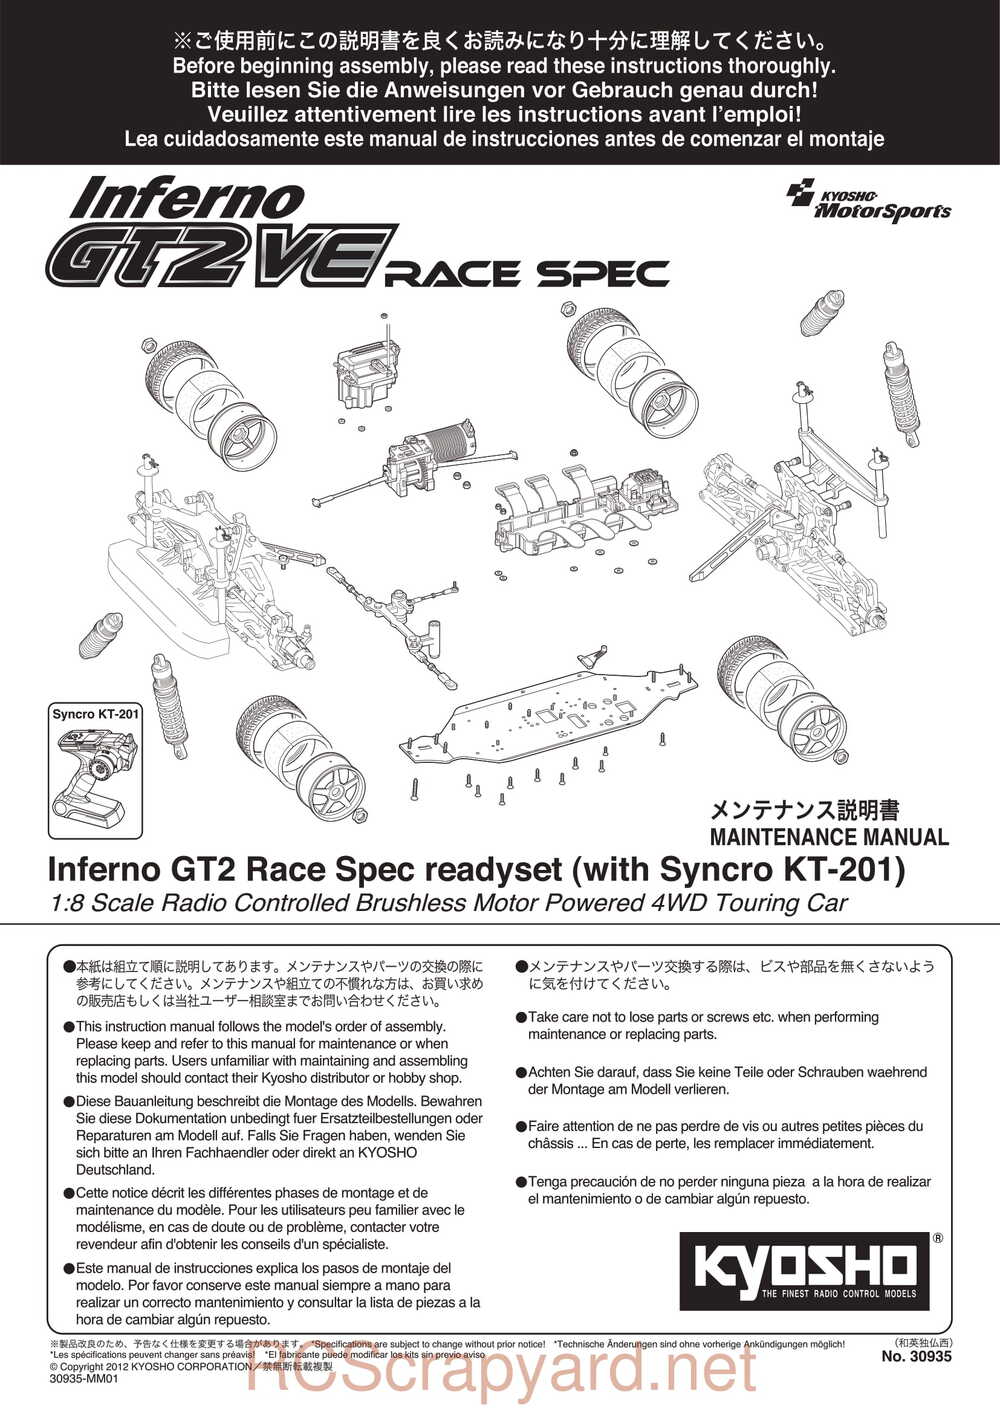 Kyosho - 30935 - Inferno GT2 VE Race-Spec - Manual - Page 01